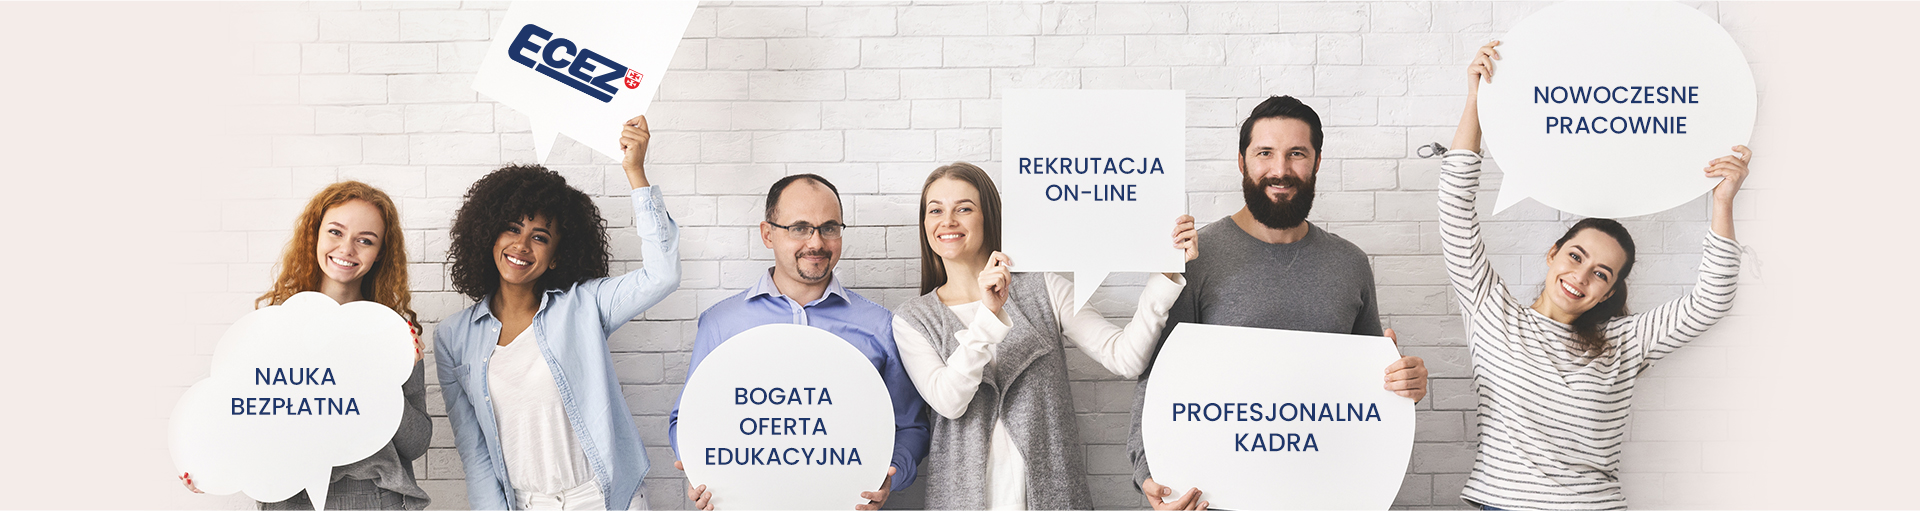 zdjęcie przedstawiające uśmiechnięte osoby trzymające plansze z hasłami reklamowymi - bogata oferta edukacyjna, nowoczesne pracownie